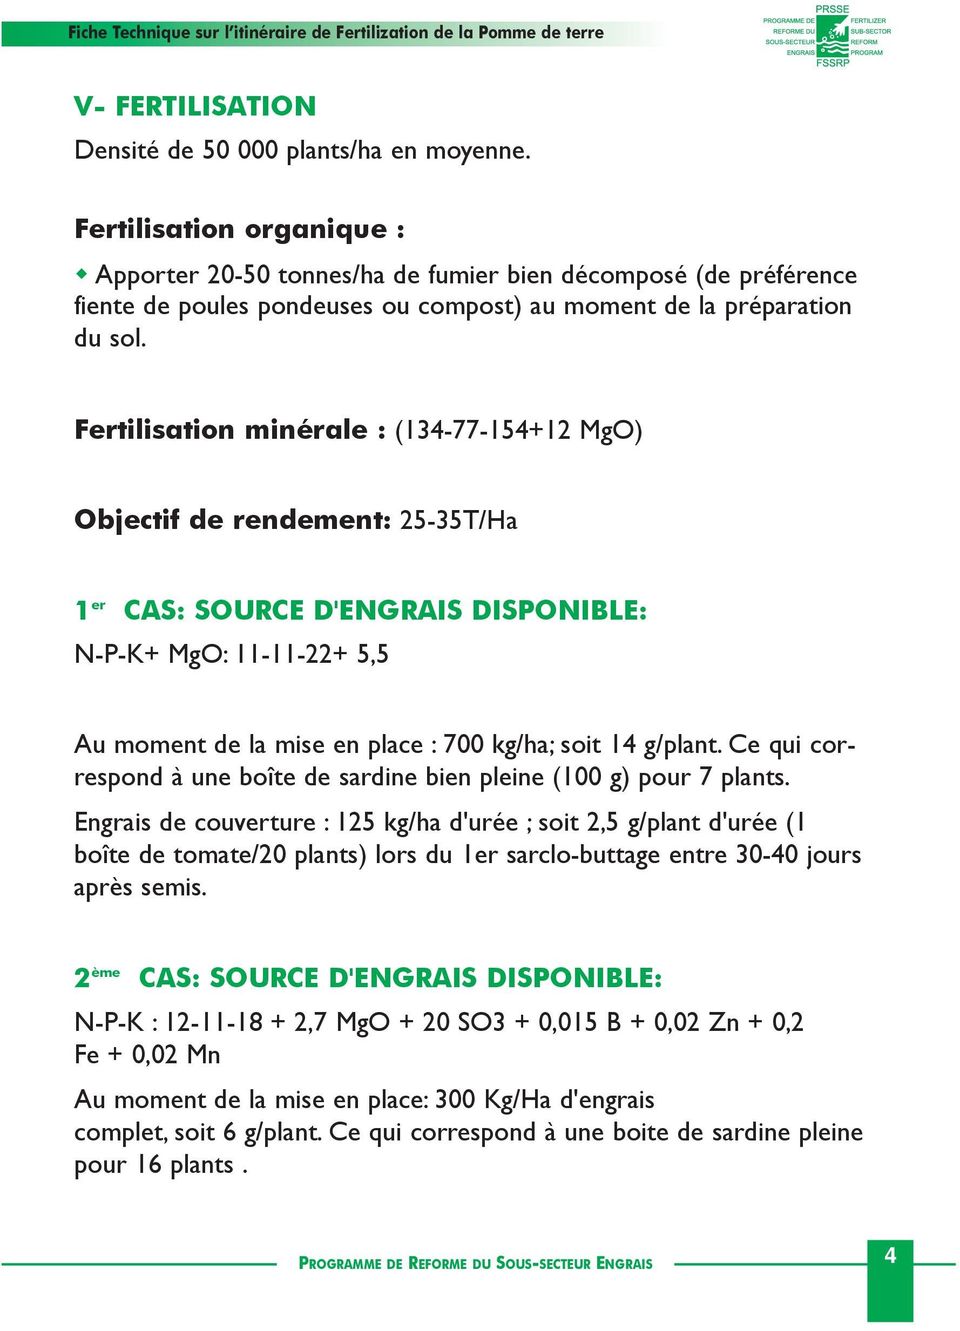 Fertilisation minérale : (134-77-154+12 MgO) Objectif de rendement: 25-35T/Ha 1 er CAS: SOURCE D'ENGRAIS DISPONIBLE: N-P-K+ MgO: 11-11-22+ 5,5 Au moment de la mise en place : 700 kg/ha; soit 14